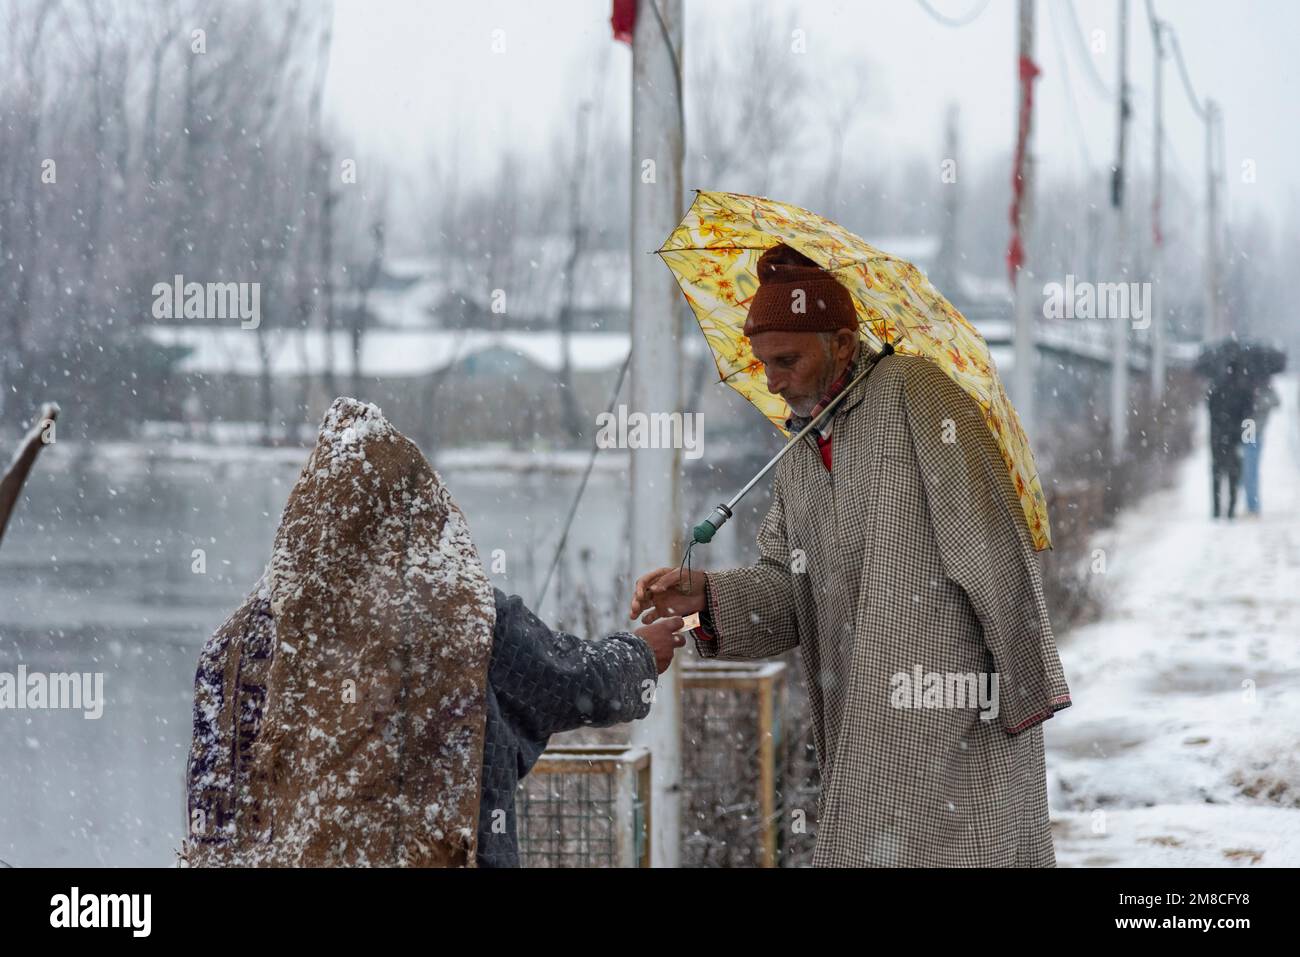 Un uomo con un ombrello trattare con il venditore di strada in caso di nevicate. Il Kashmir ha ricevuto nevicate fresche, con le cali più alte della valle che hanno ricevuto nevicate da moderate a pesanti e nevicate da leggere a moderate in pianura, causando una visibilità distruttiva. Questo ha influito sulle operazioni di volo insieme alla chiusura dell'autostrada nazionale Srinagar-Jammu. Foto Stock